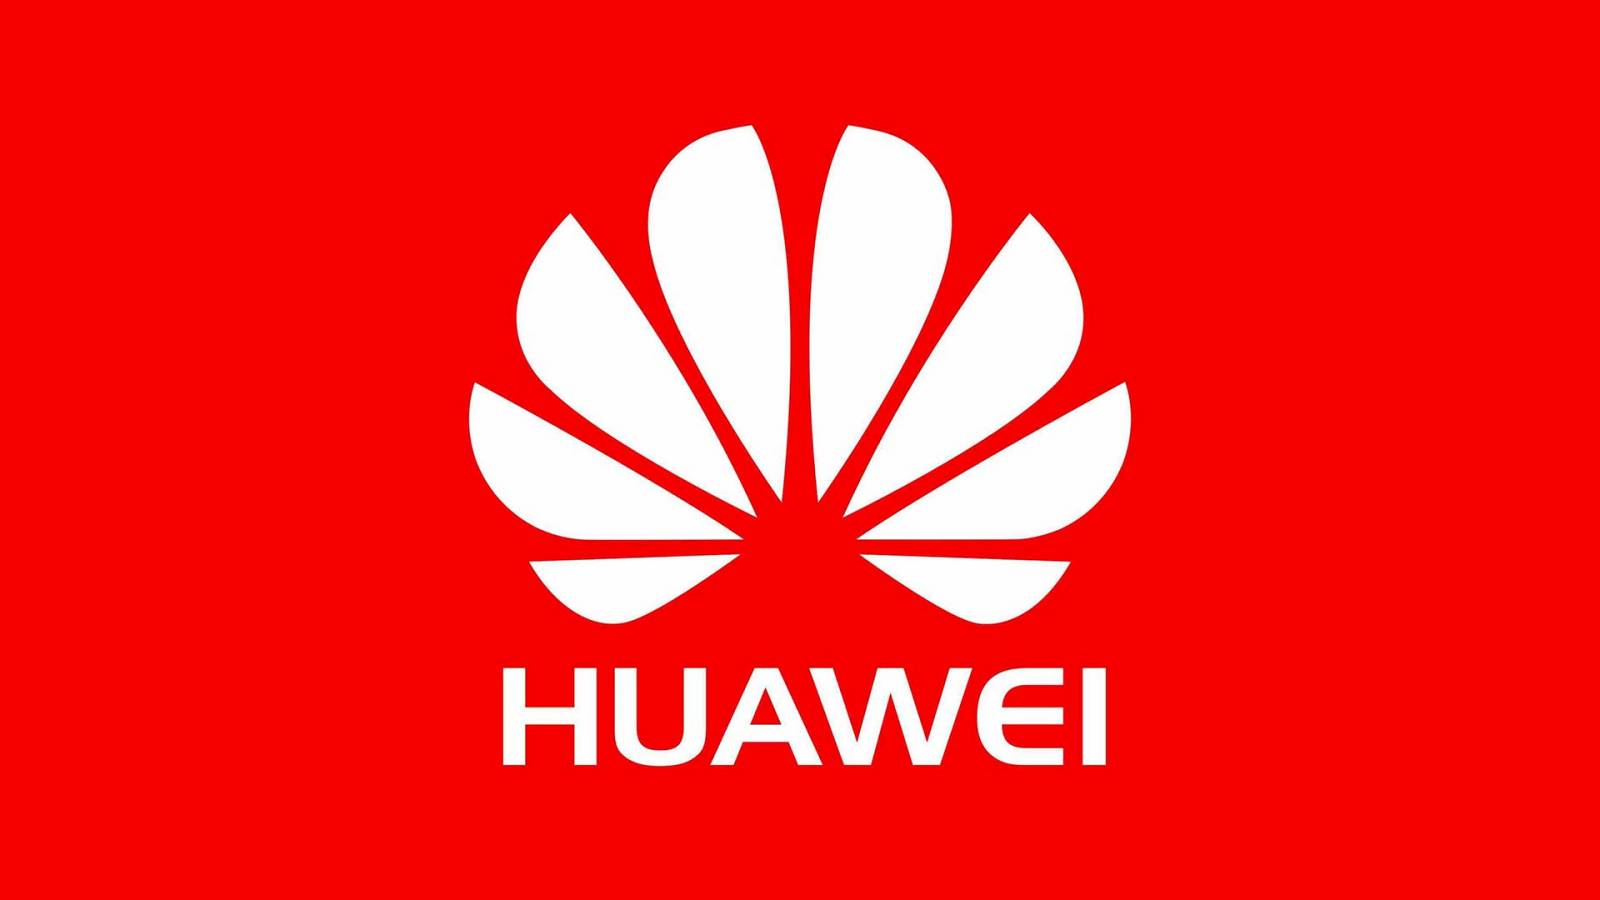 Huawei skämmer ut sig själv på ett DUMT och Fullständigt värdelöst sätt